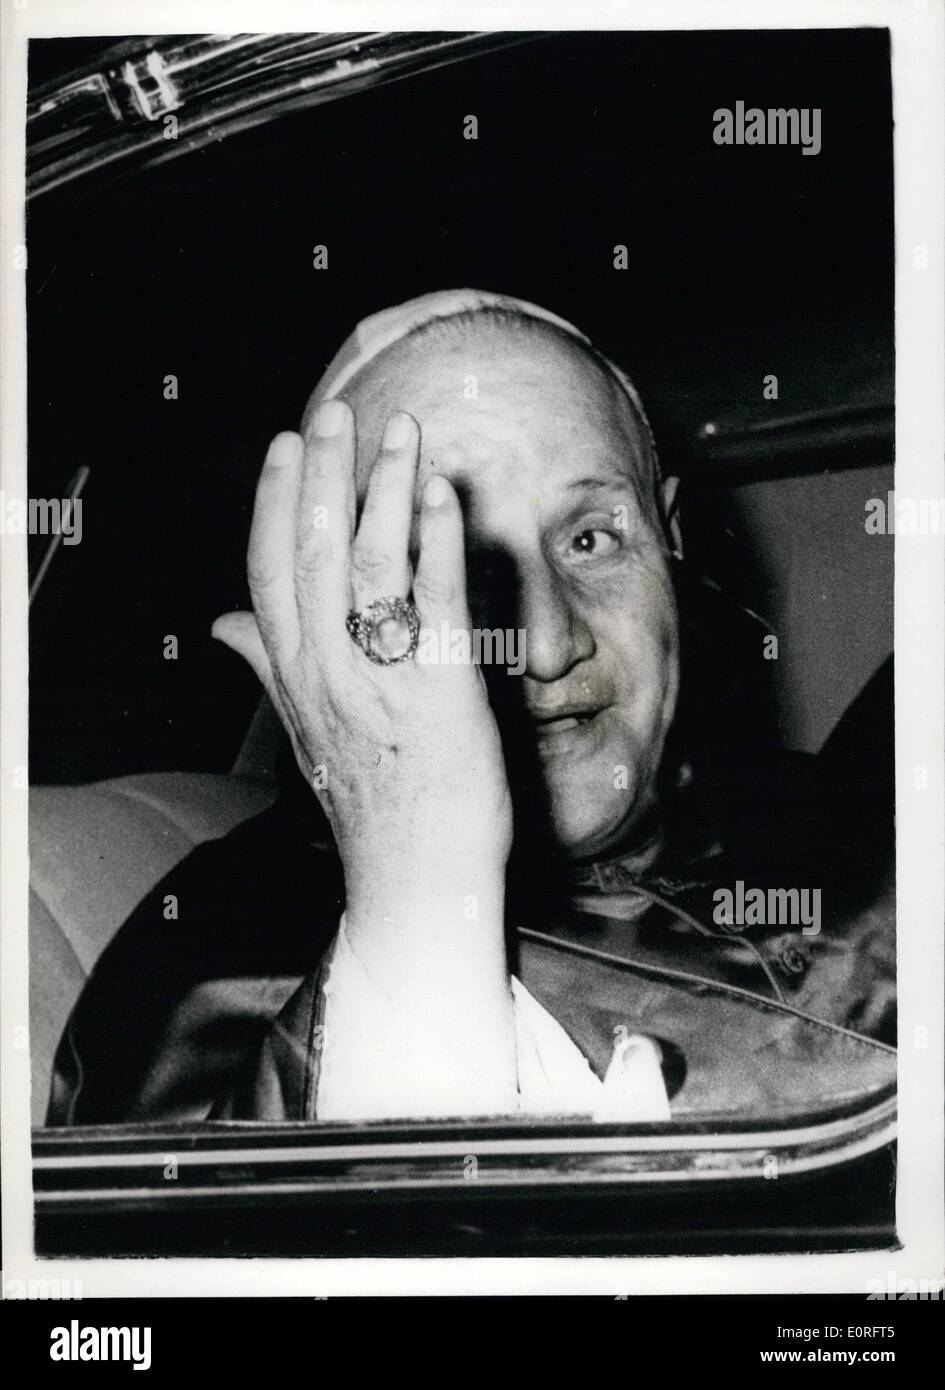 5. Mai 1959 - besucht Papst John XXIII alten Viertel von Rom. Papst John XXIII der Heilige Vater - bildete einen Besuch am Wochenende, dem ältesten Viertel von Rom. Der Besuch war noch das Heilige Abendmahl Kommunion 40 Kindern zu geben... Foto zeigt: - Papst John XXIII gesehen bei seinem Besuch in der alten Viertel Roms. Stockfoto